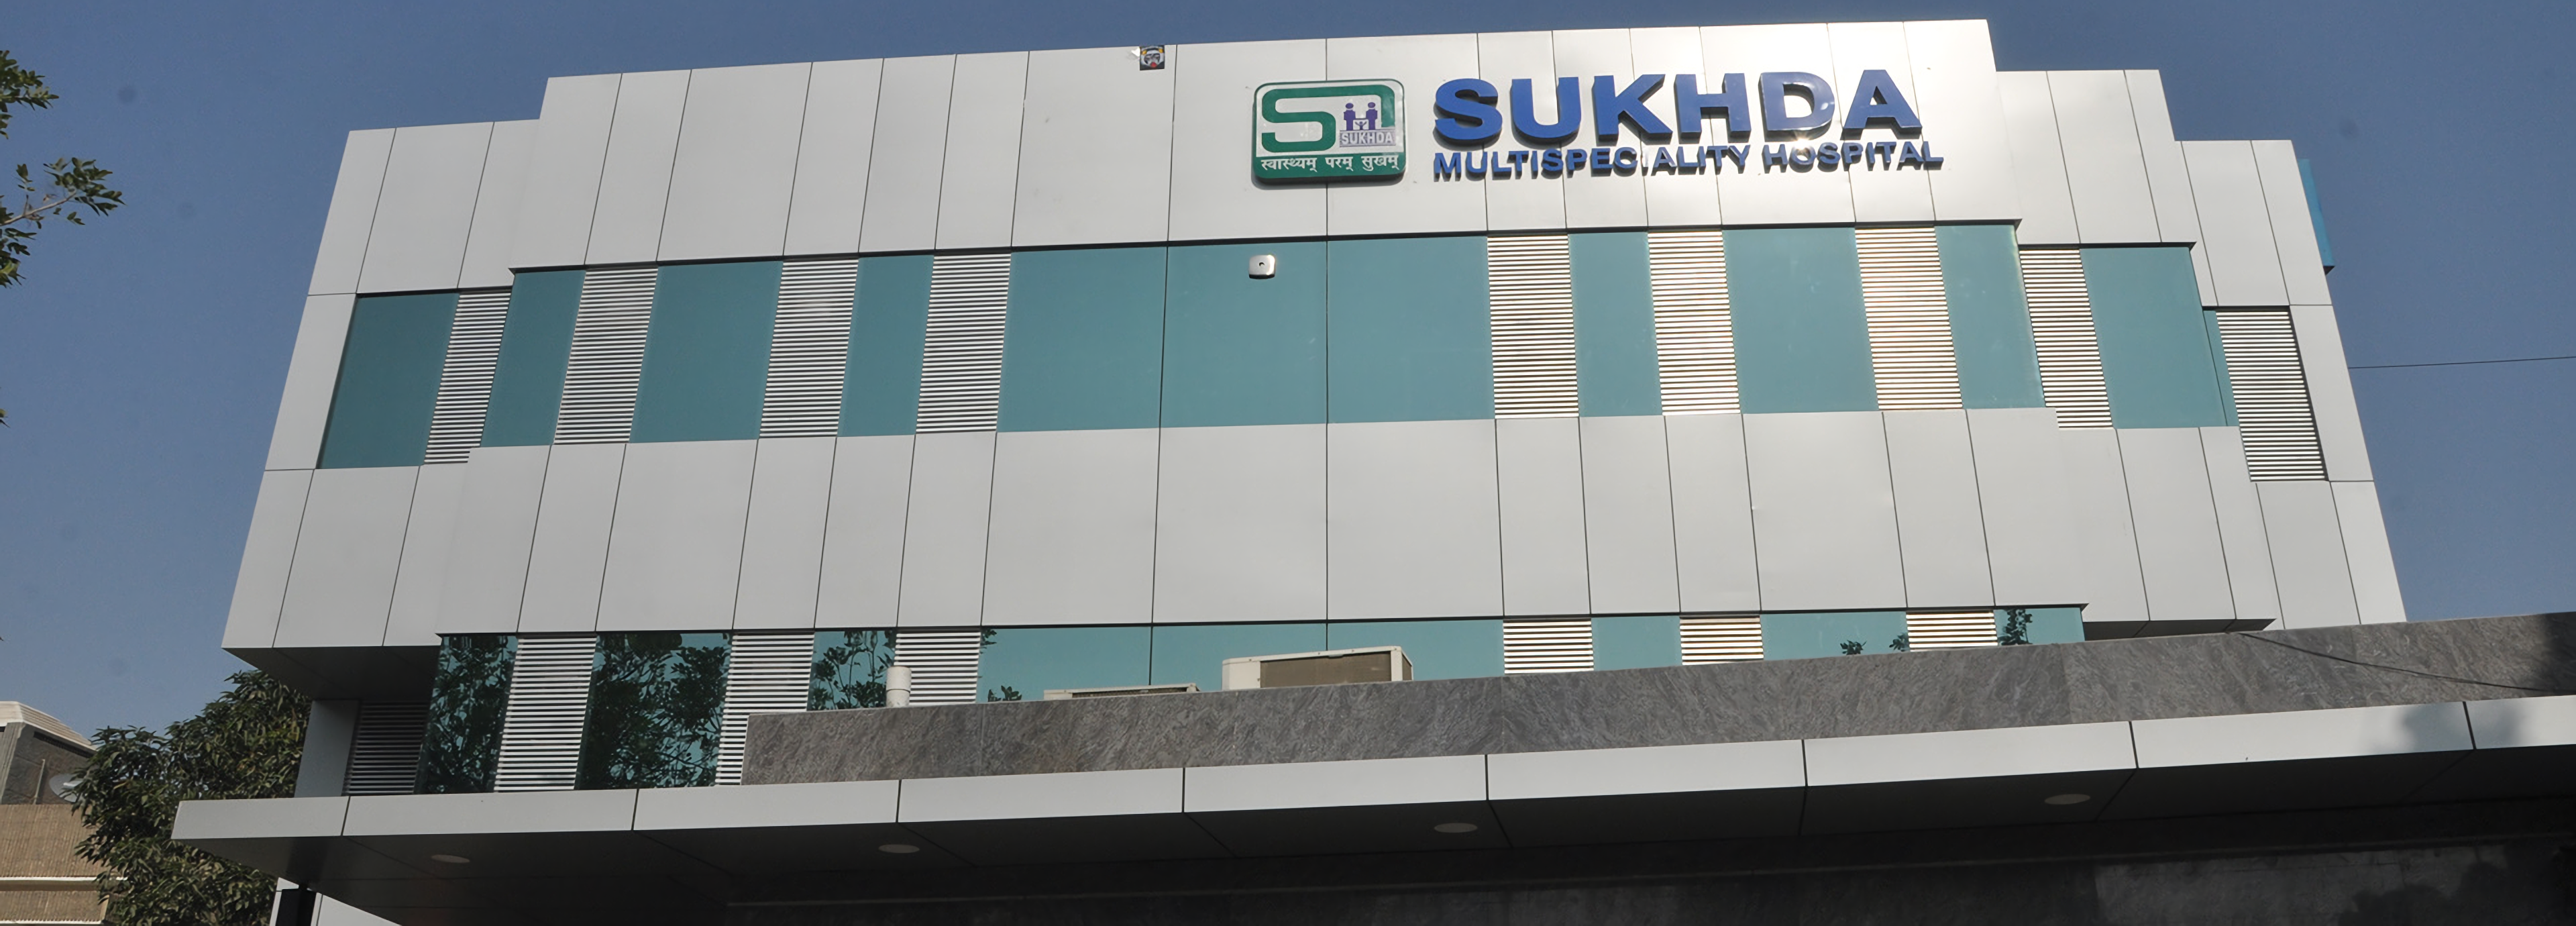 Sukhda Hospital